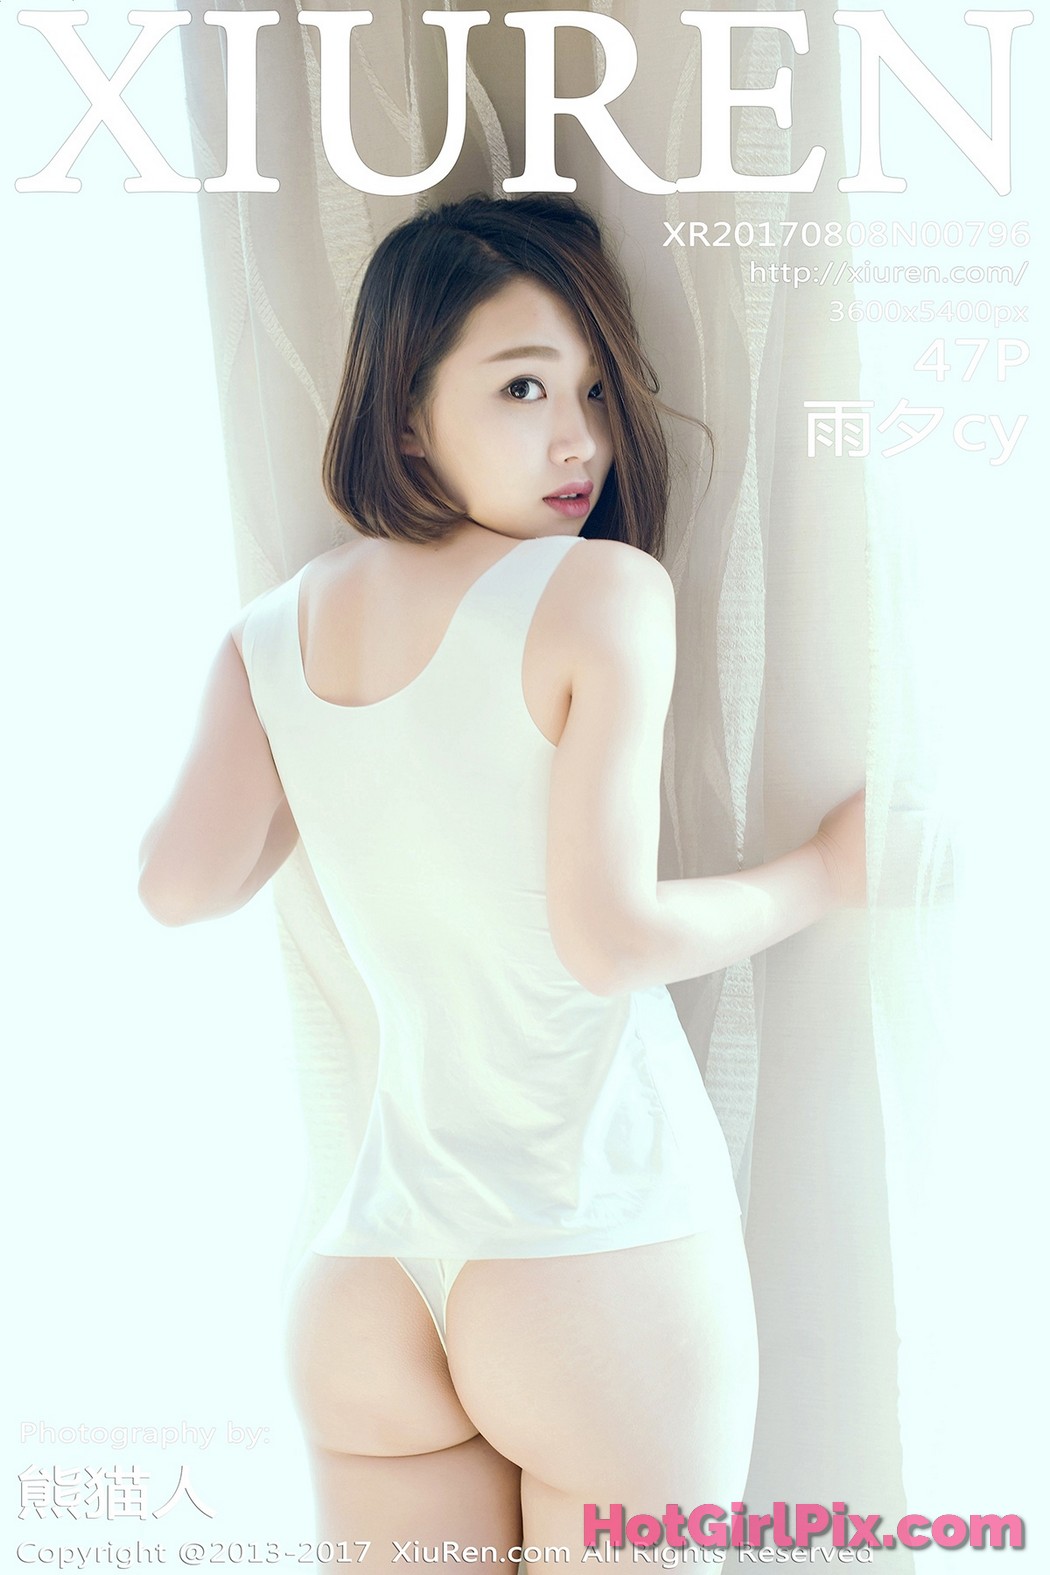 [XIUREN] No.796 Yu Xi 雨夕cy Cover Photo